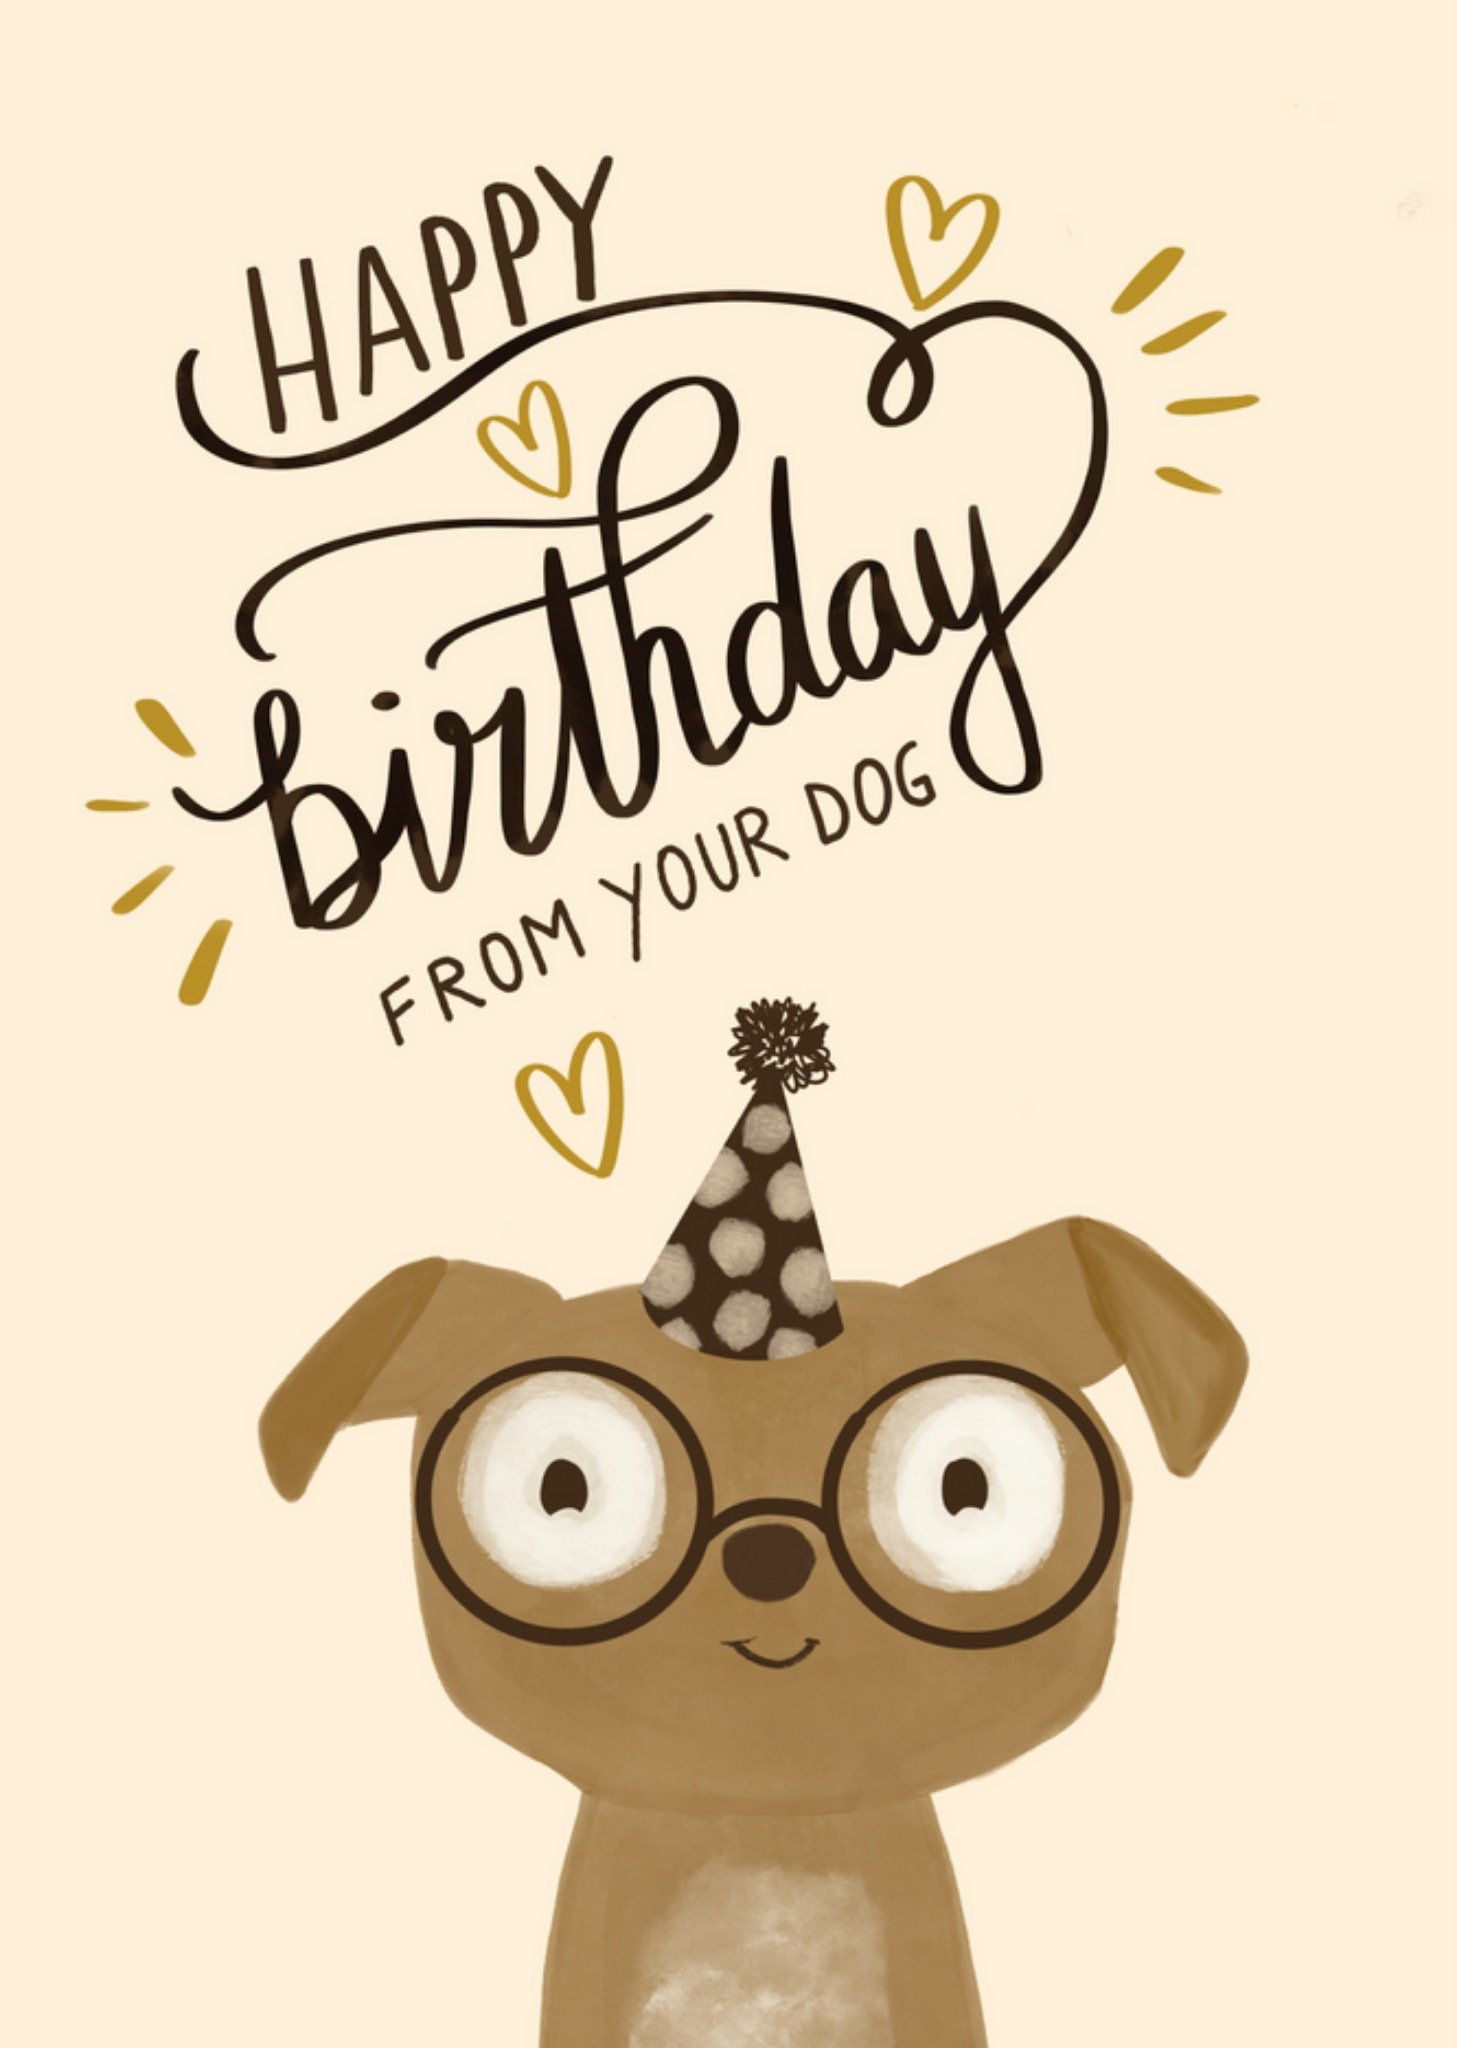 Tsjip - Verjaardagskaart - From your dog